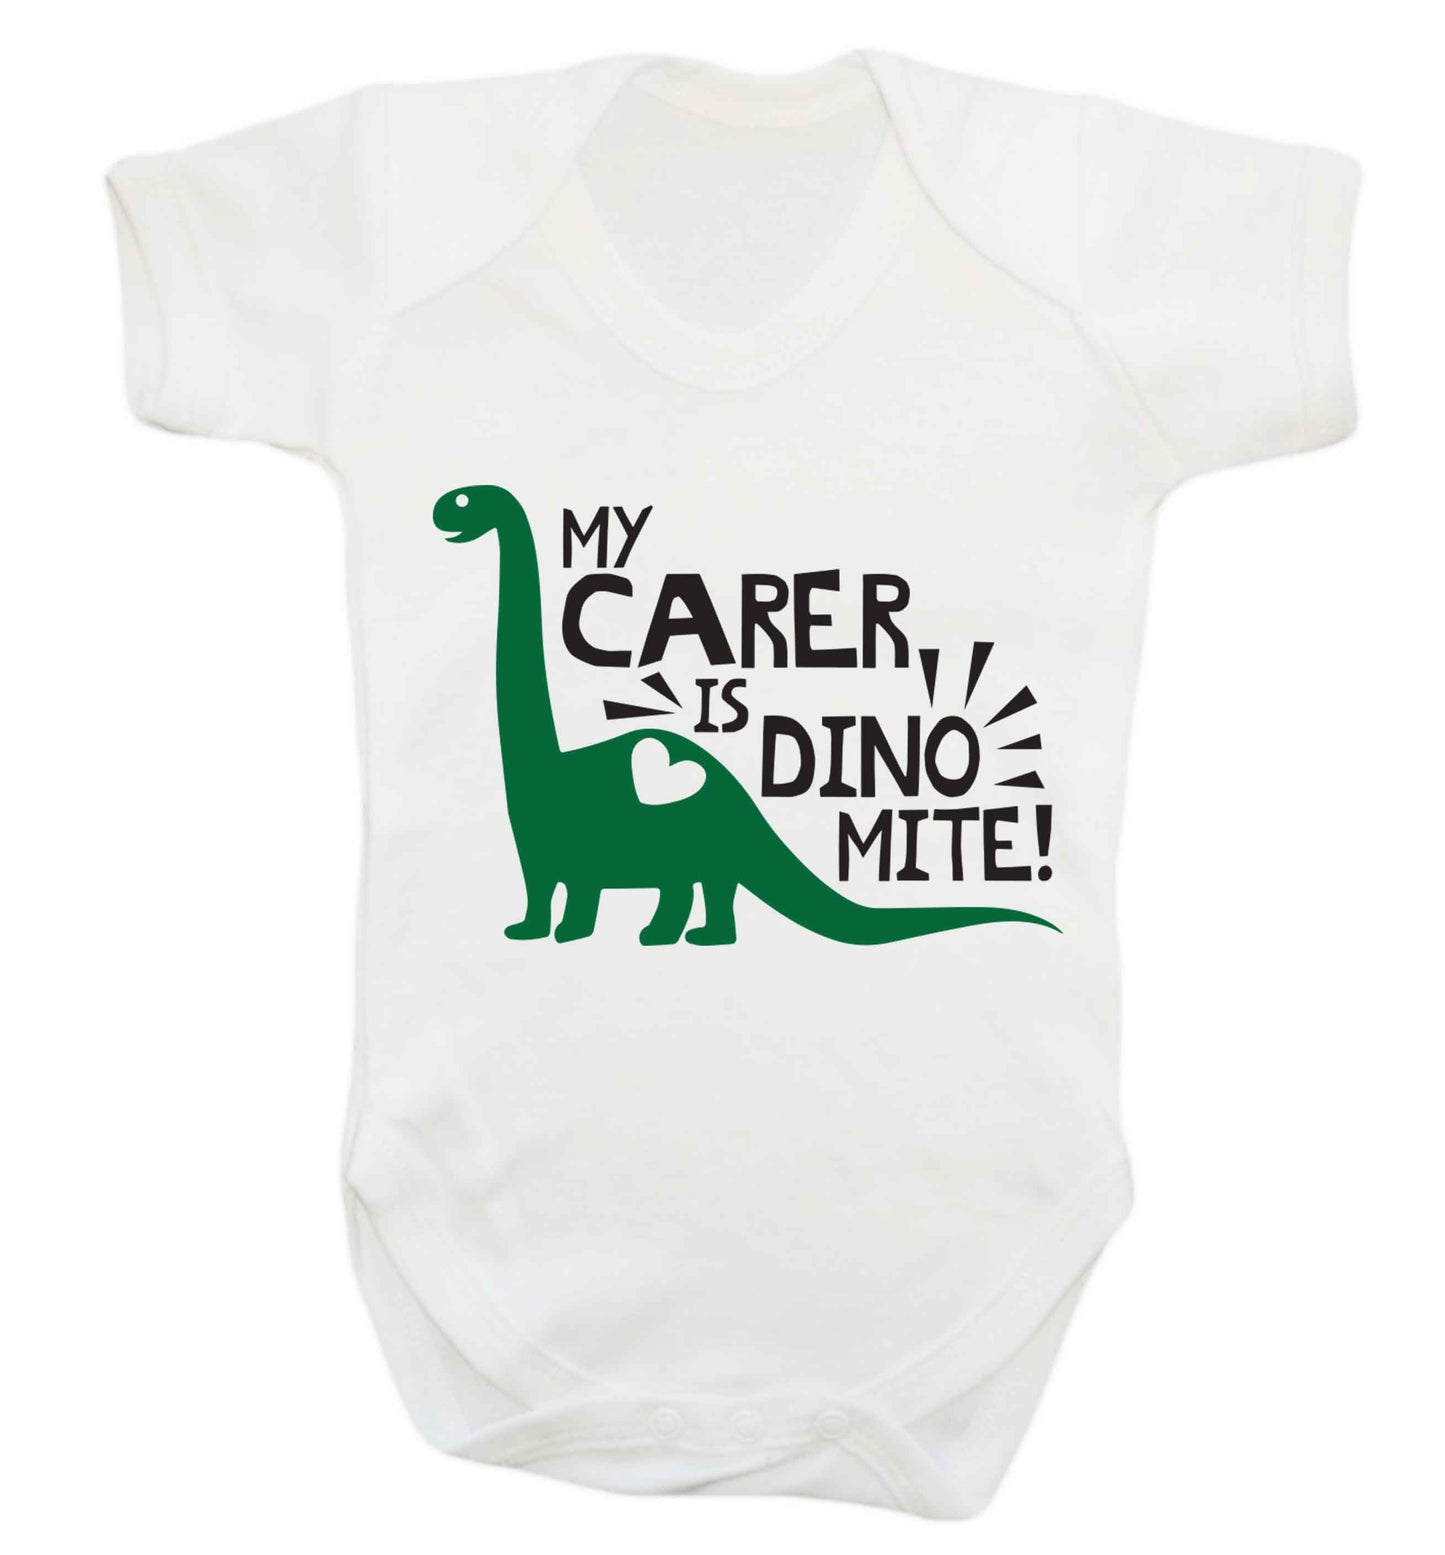 My carer is dinomite! Baby Vest white 18-24 months